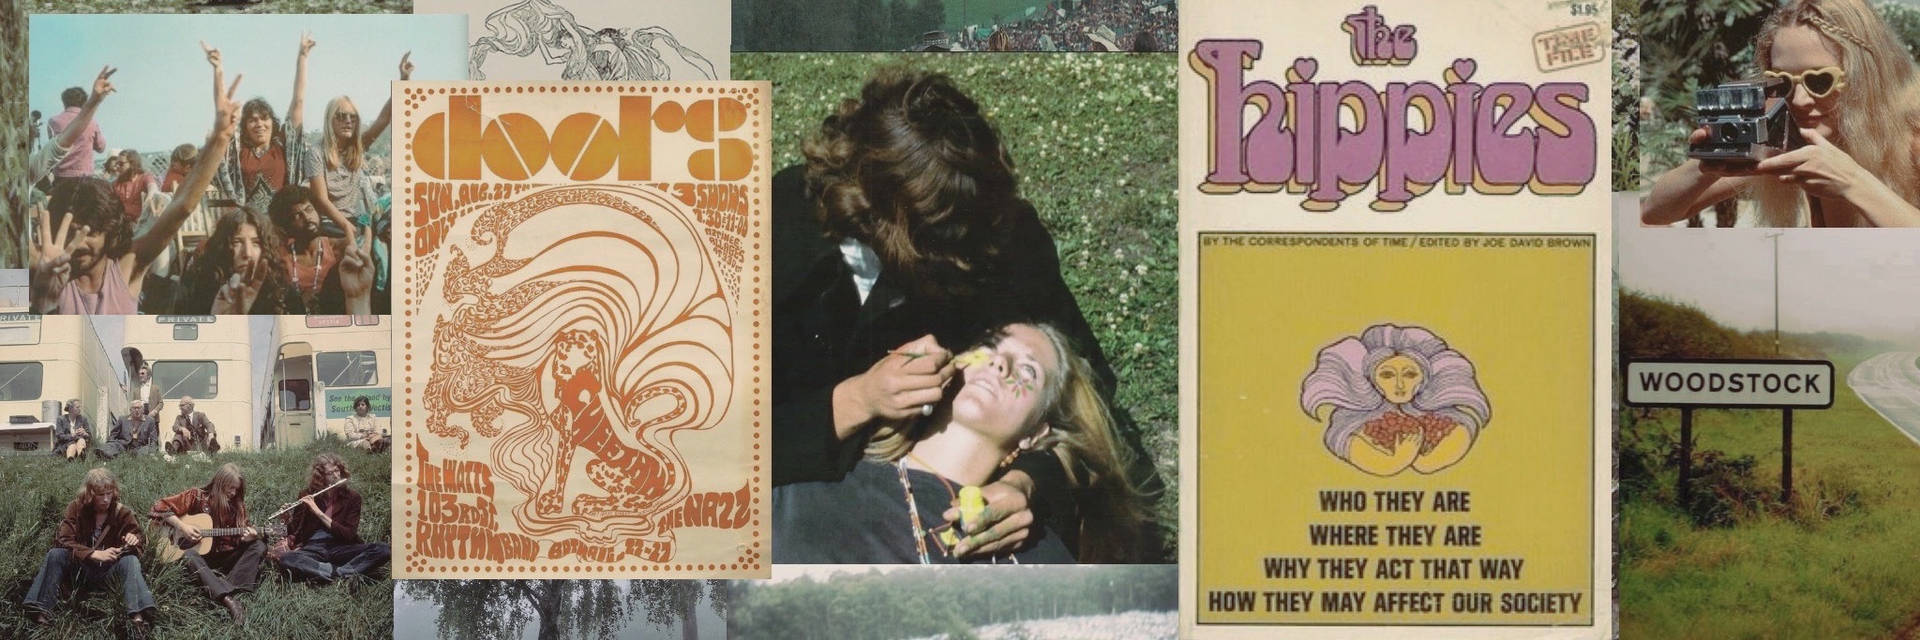 Cabeçalhoestético De Woodstock. Papel de Parede